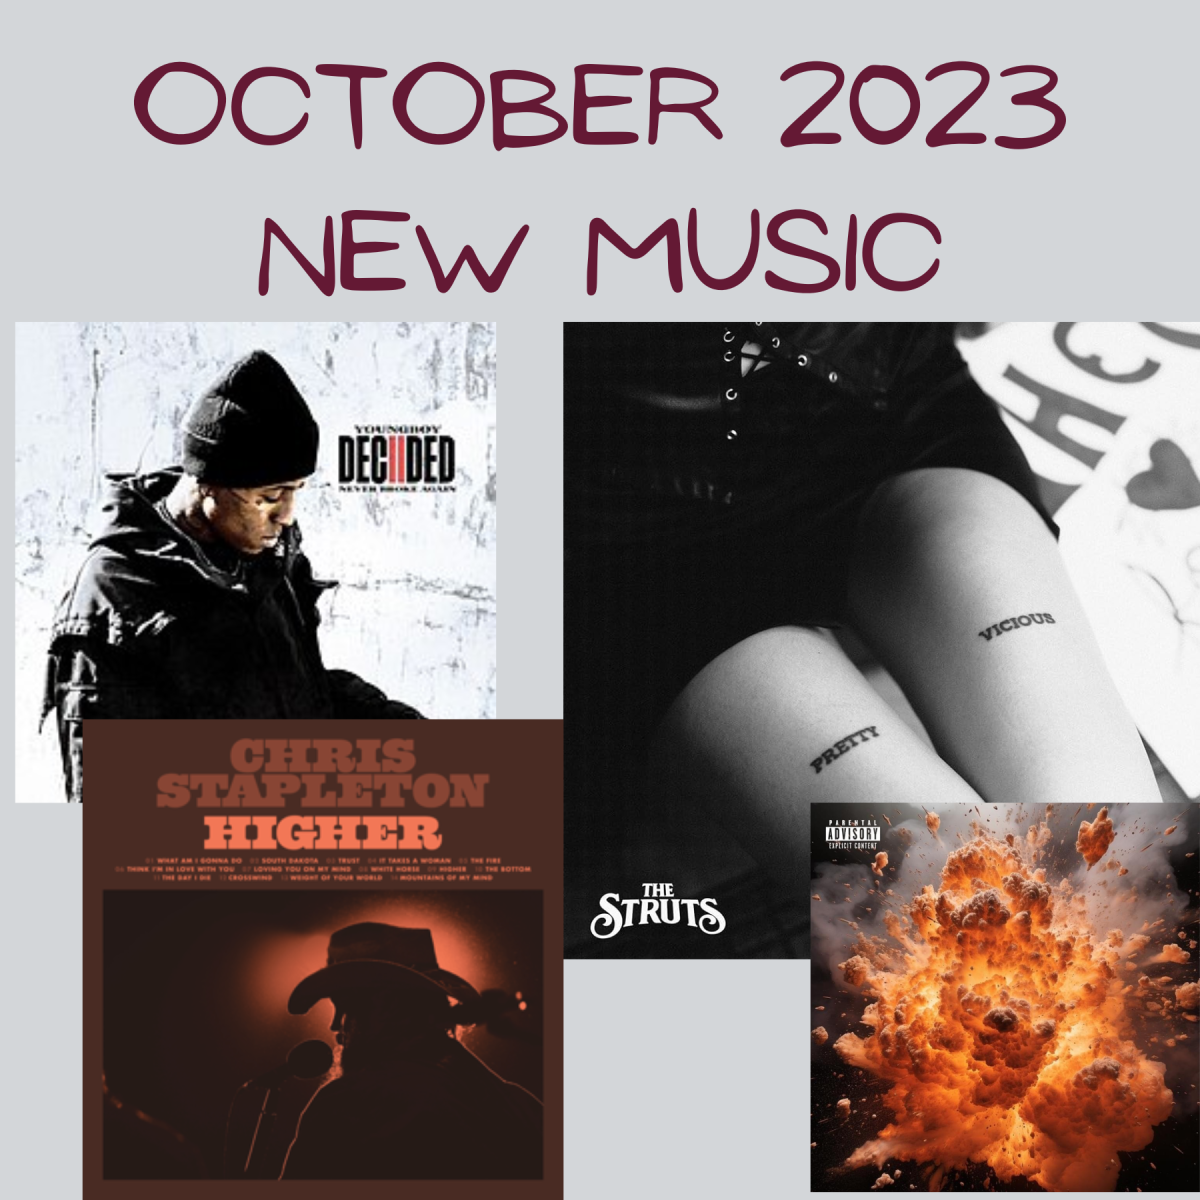 New music releases for November